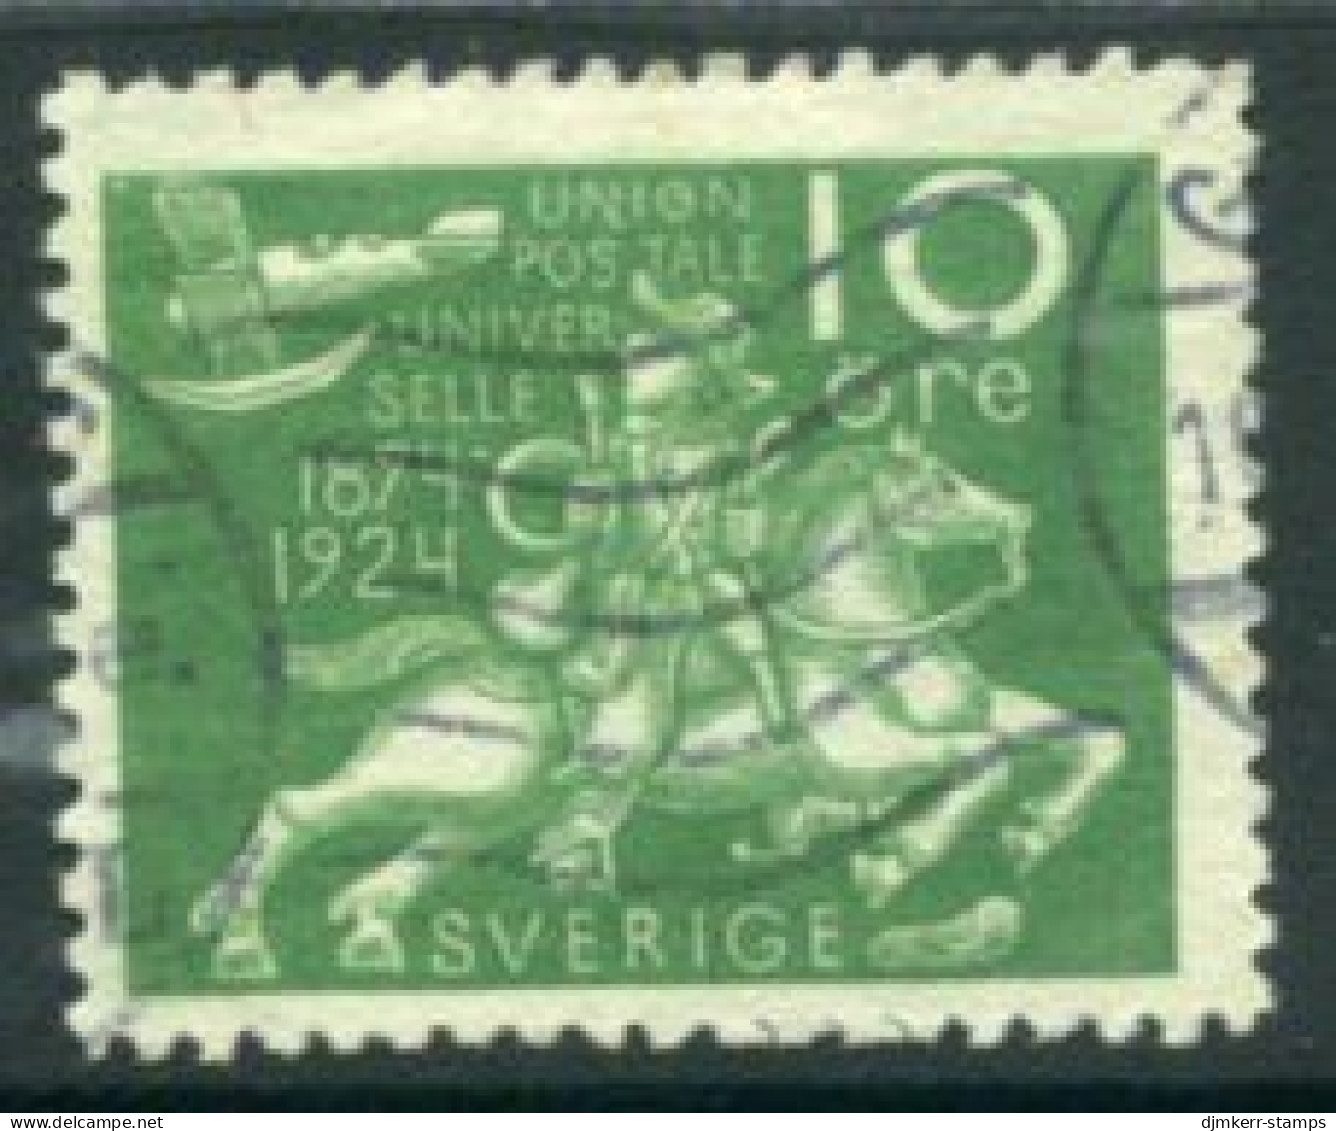 SWEDEN 1924  World Postal Union 10 öre Used  Michel 160W - Gebraucht